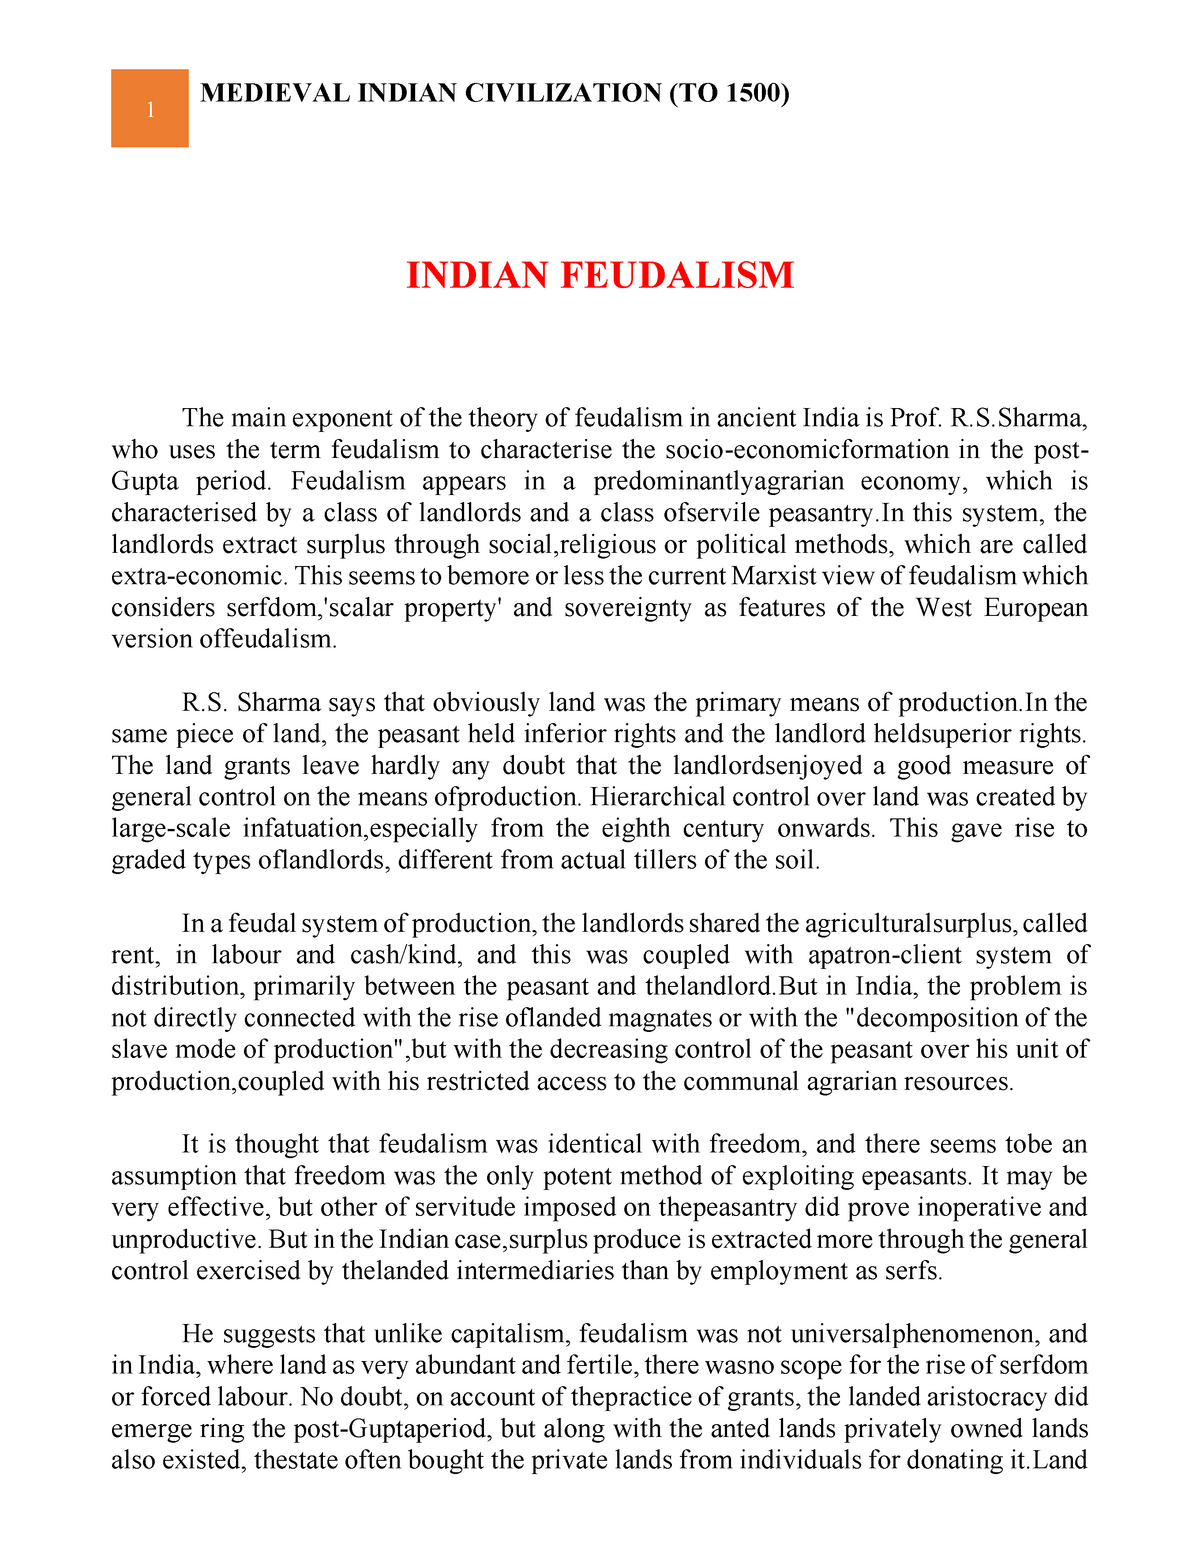 essay on indian feudalism